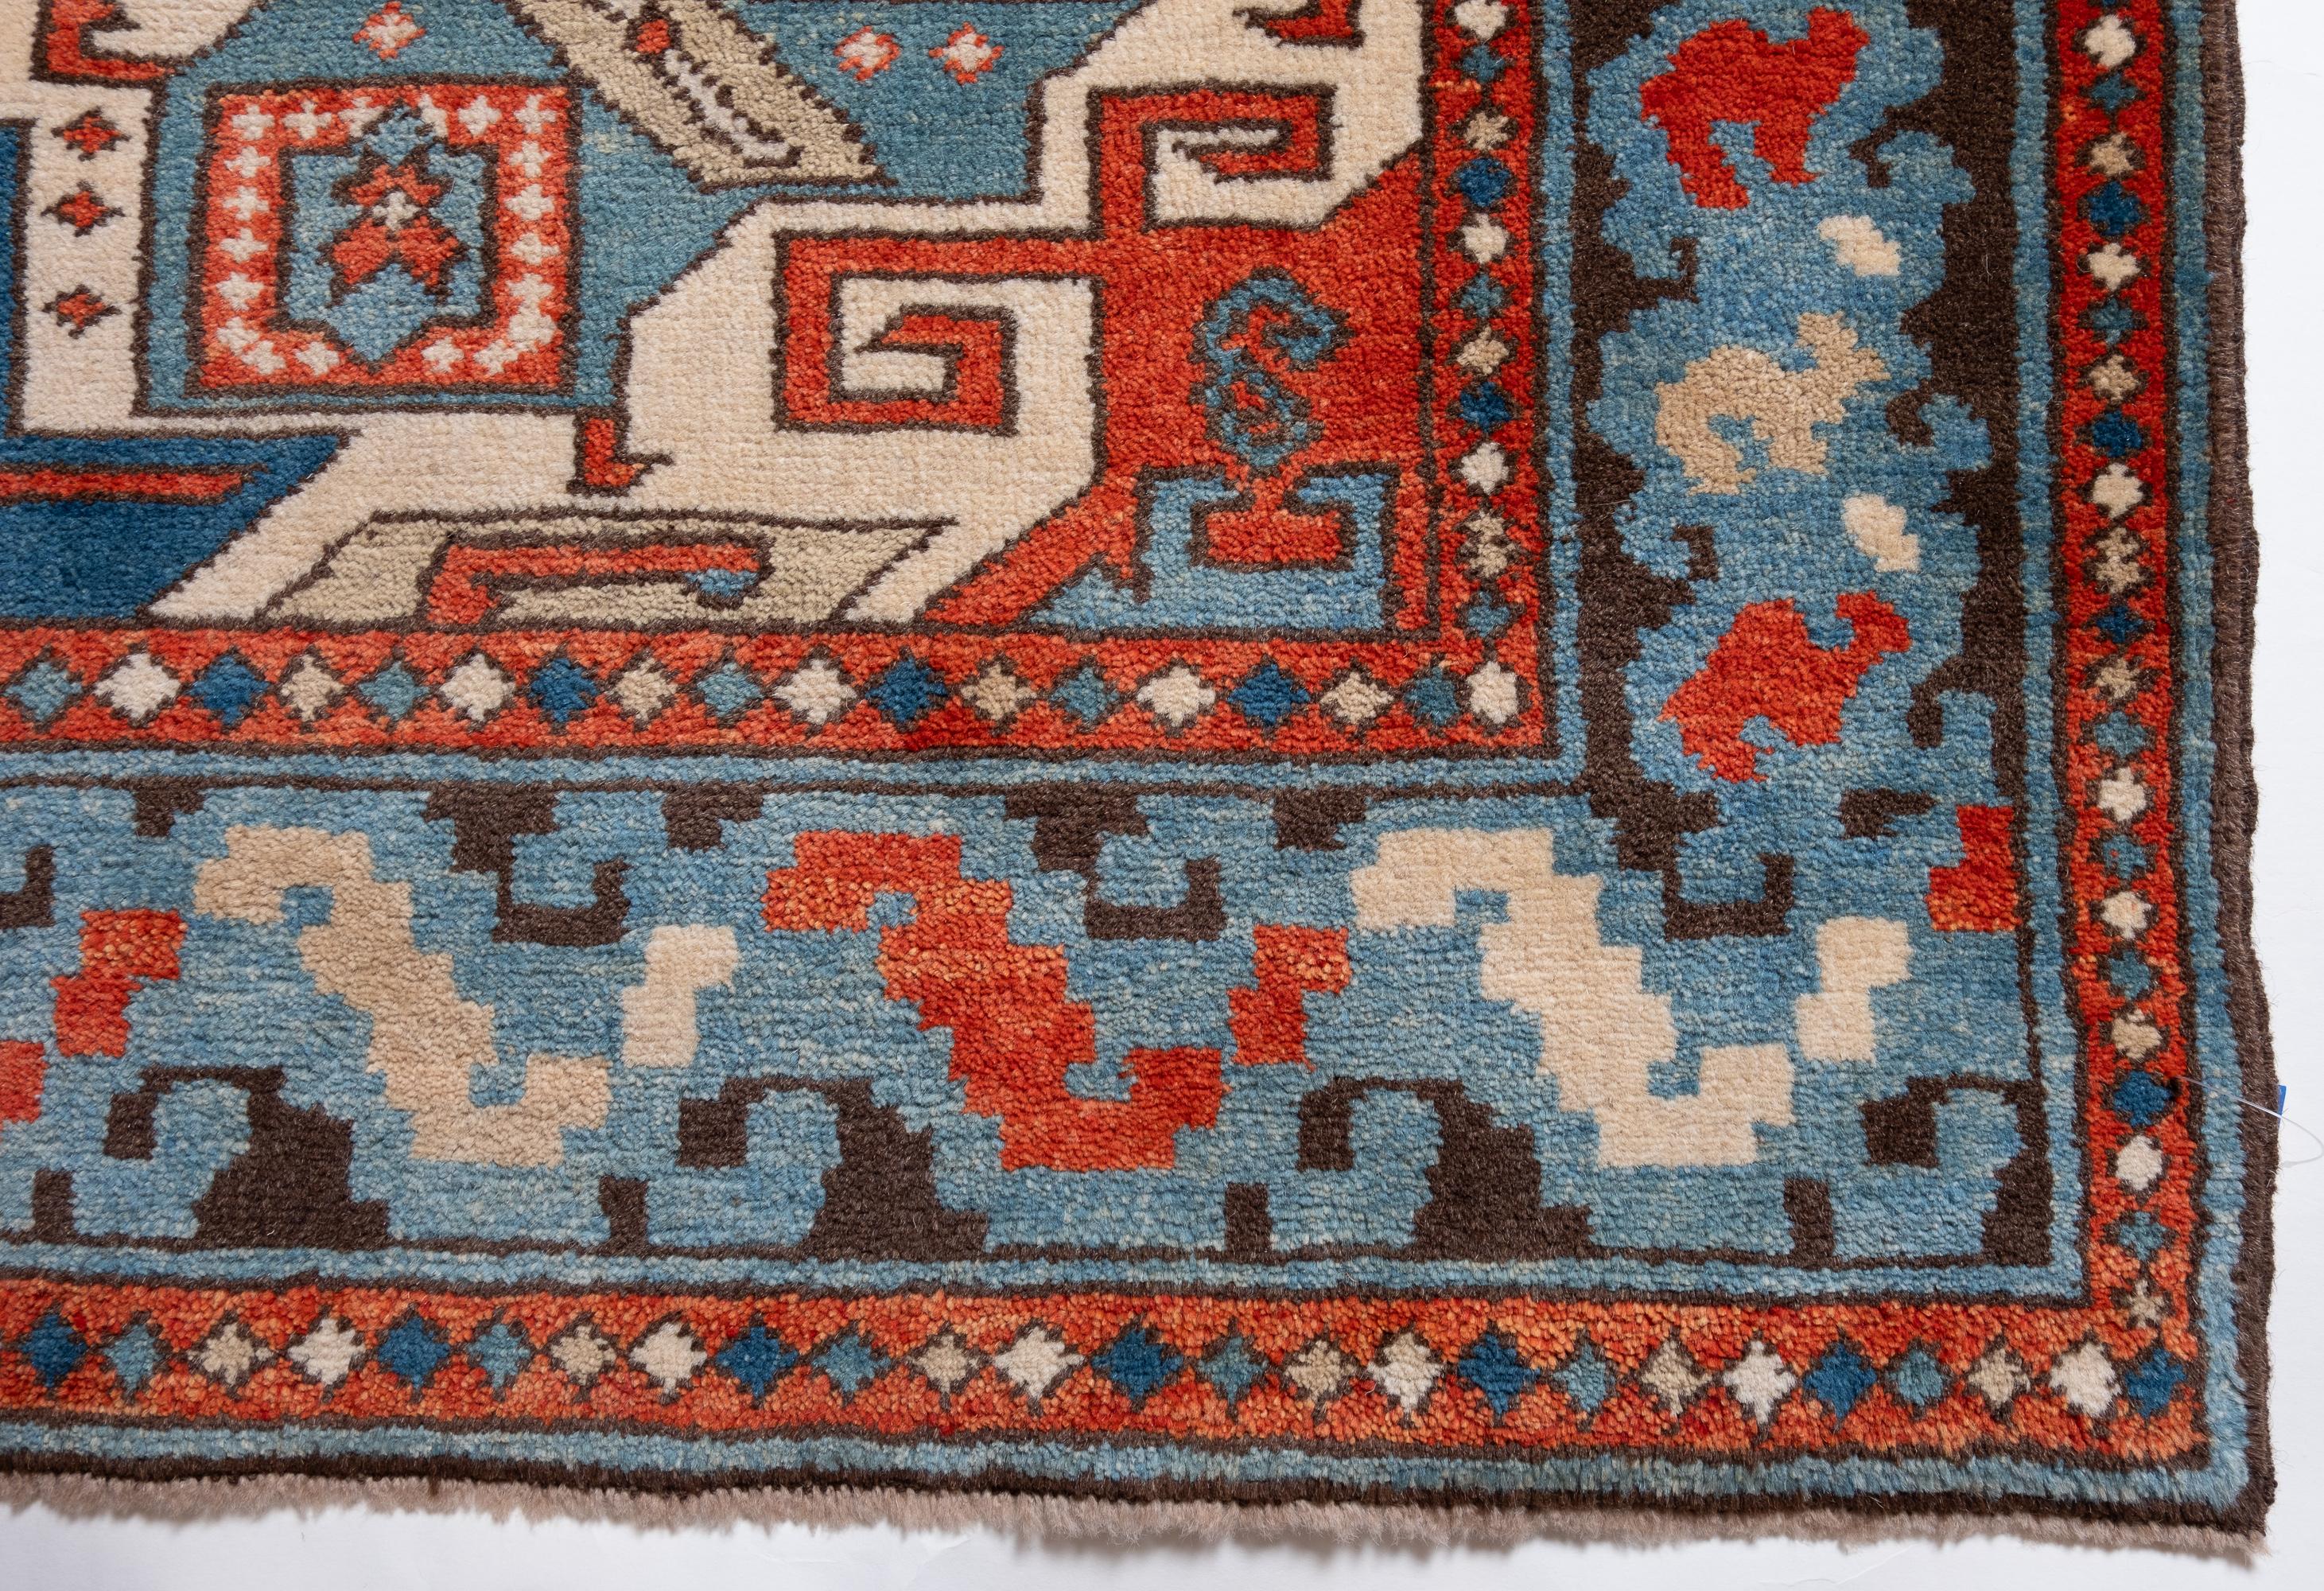 Die Quelle des Teppichs stammt aus dem Buch Orient Star - A Carpet Collection, E. Heinrich Kirchheim, Hali Publications Ltd, 1993 nr.2. Dies ist das bekannteste Beispiel eines Star Kazaks Teppichs aus der Mitte des 19. Star-Kazak-Teppiche gelten als